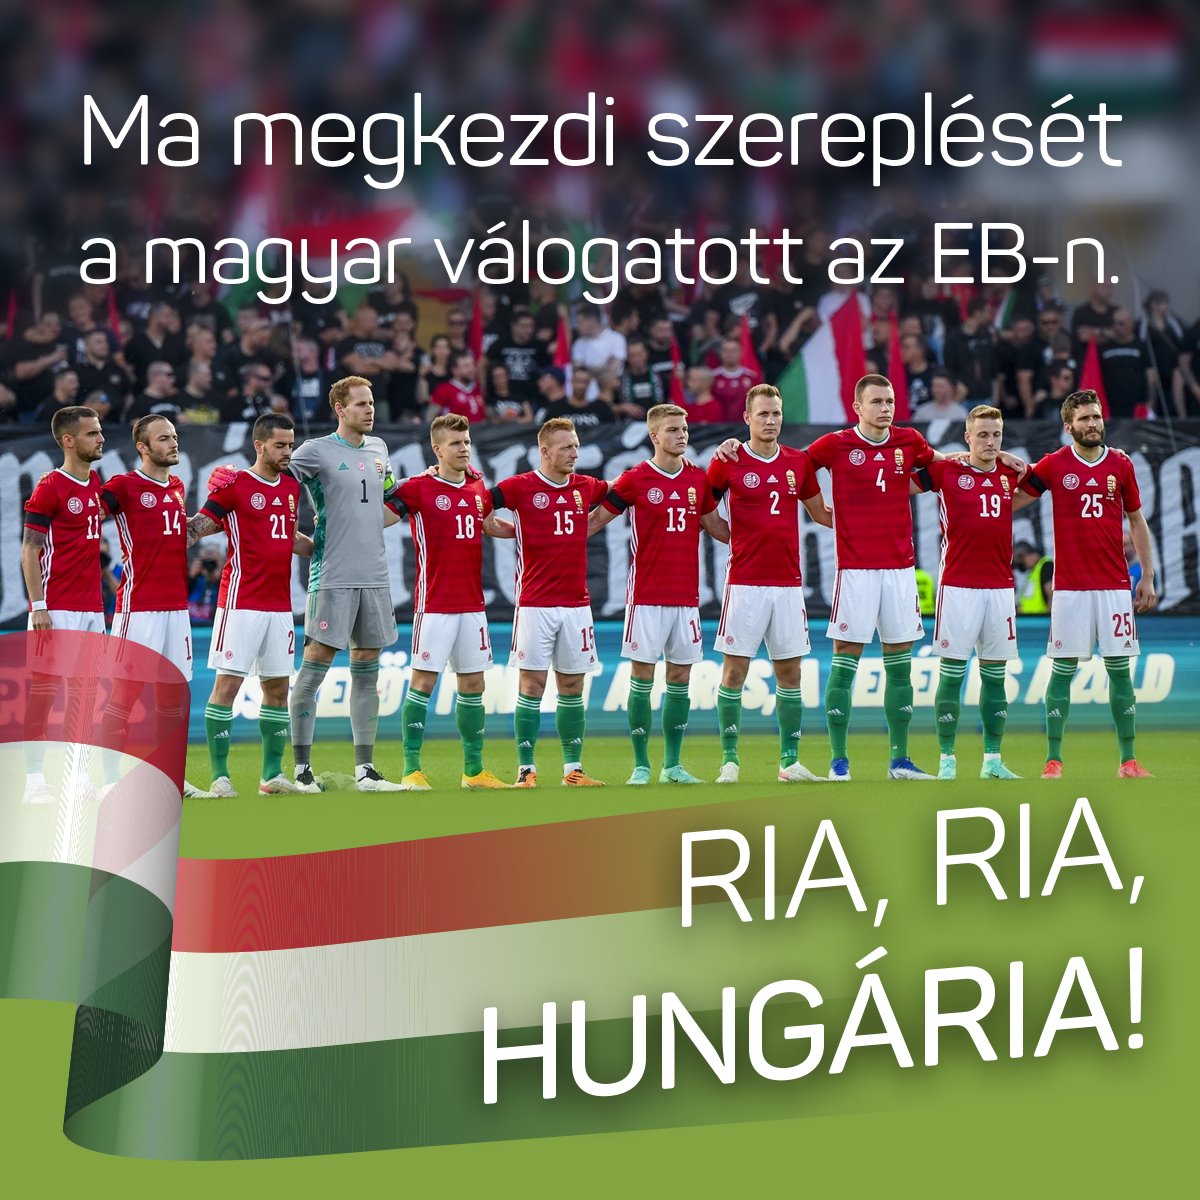 Ma megkezdi szereplését a magyar válogatott. Hajrá, magyarok!